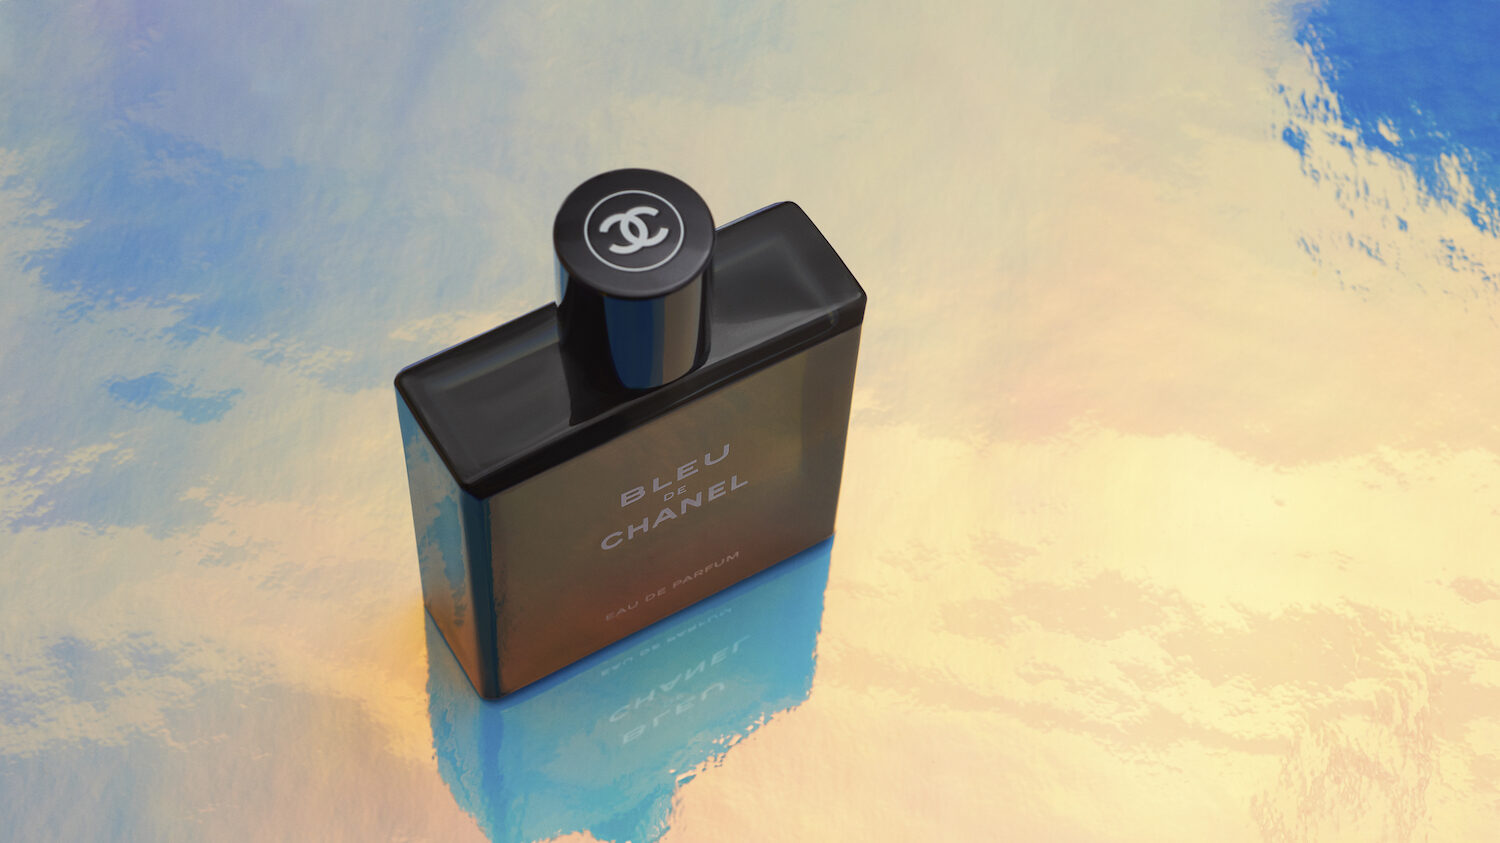 HaiNgo 05 Chanel Bleu Hologram 0213 copy 2 e1607301475634 - grooming, gift, fragrance - Bleu De Chanel - fragrance, chanel - Bleu De Chanel